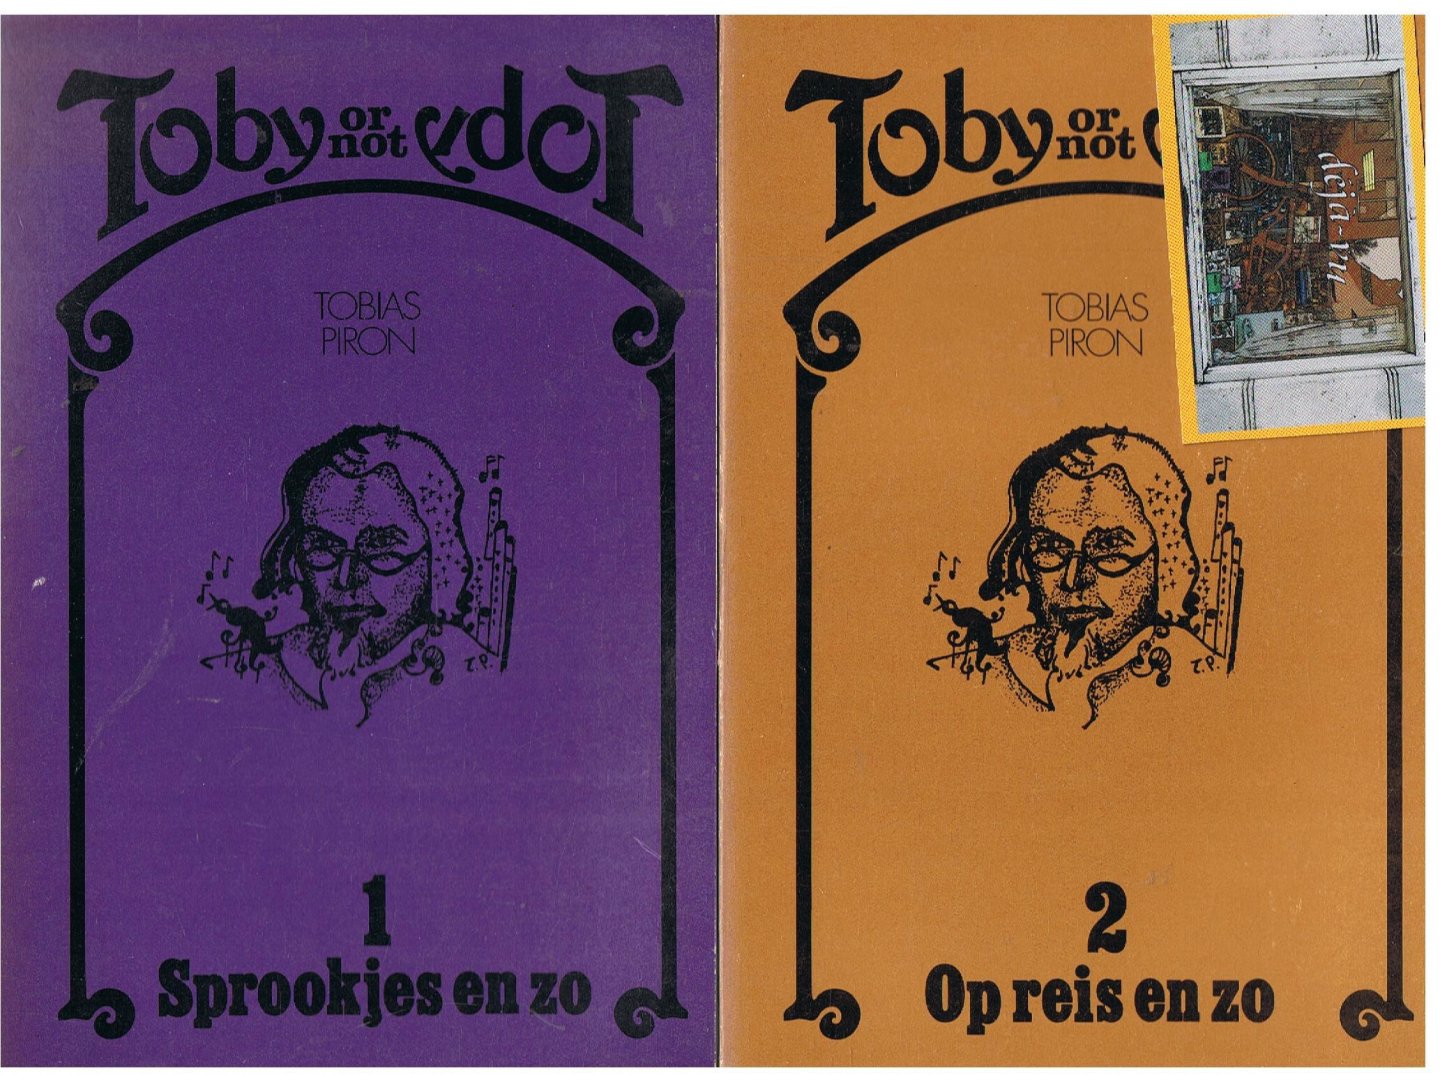 Piron, Tobias - deel 1 & 2 Toby or not Toby / Sprookjes en zo & Op reis en zo